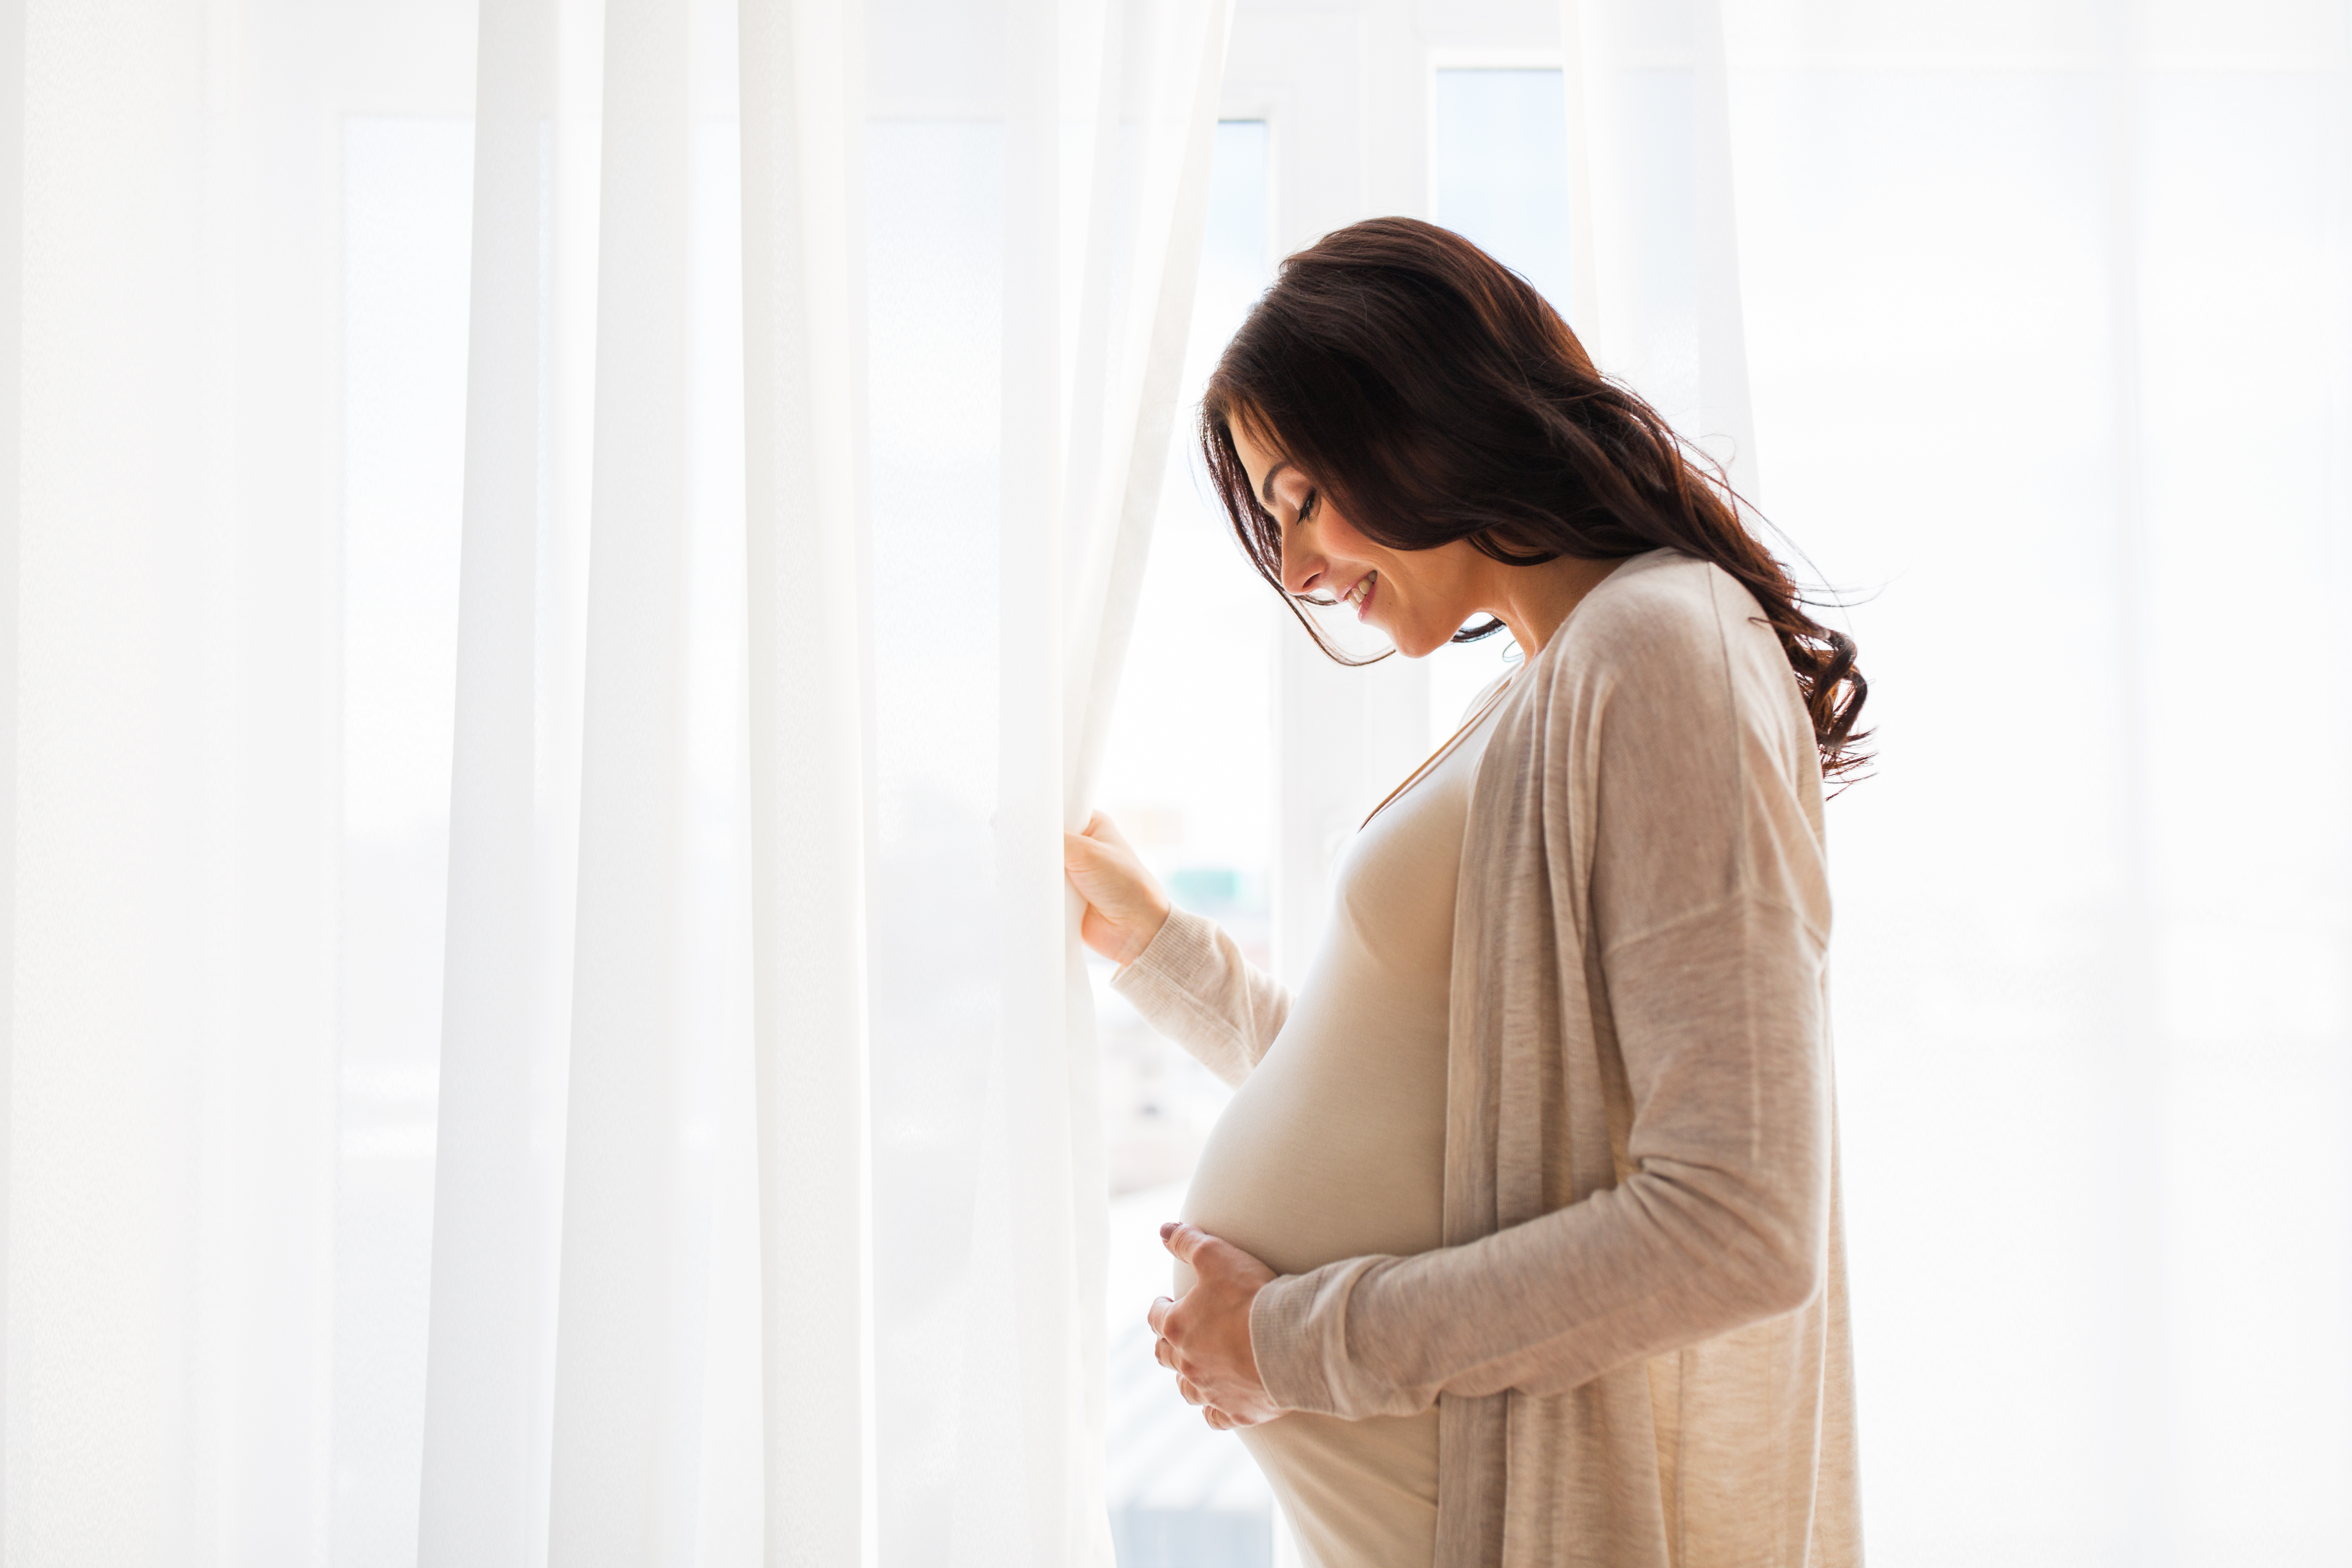 Sa femme et lui ont traversé la grossesse sans encombre, jusqu'au jour où tout a changé. | Source : Shutterstock